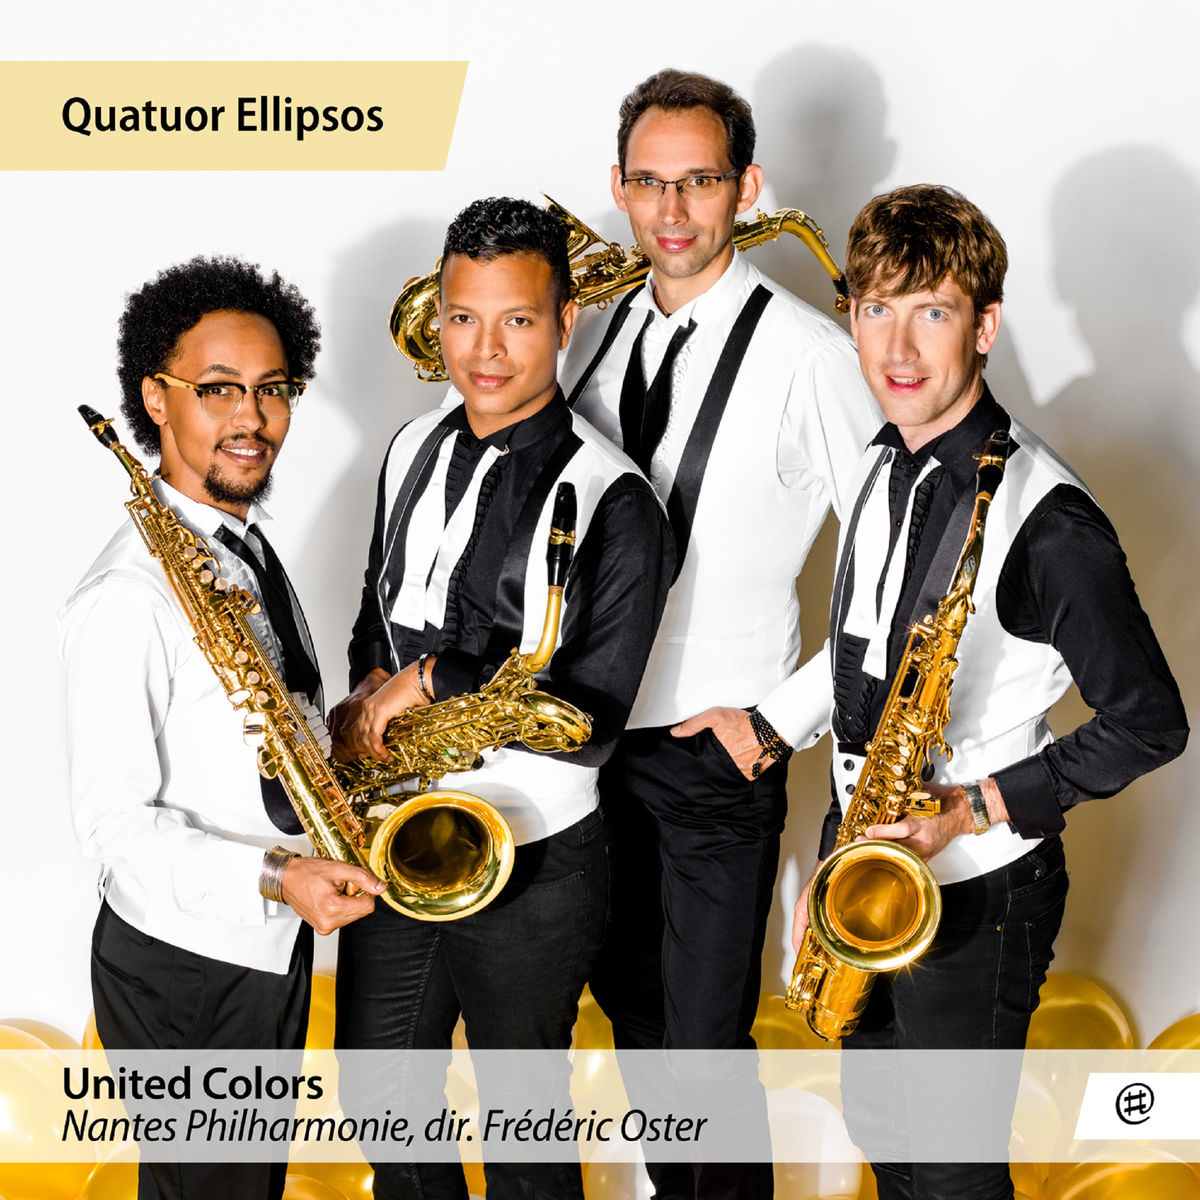 Quatuor Ellipsos, Nantes Philharmonie & Frederic Oster - United Colors (2018) [FLAC 24bit/48kHz]